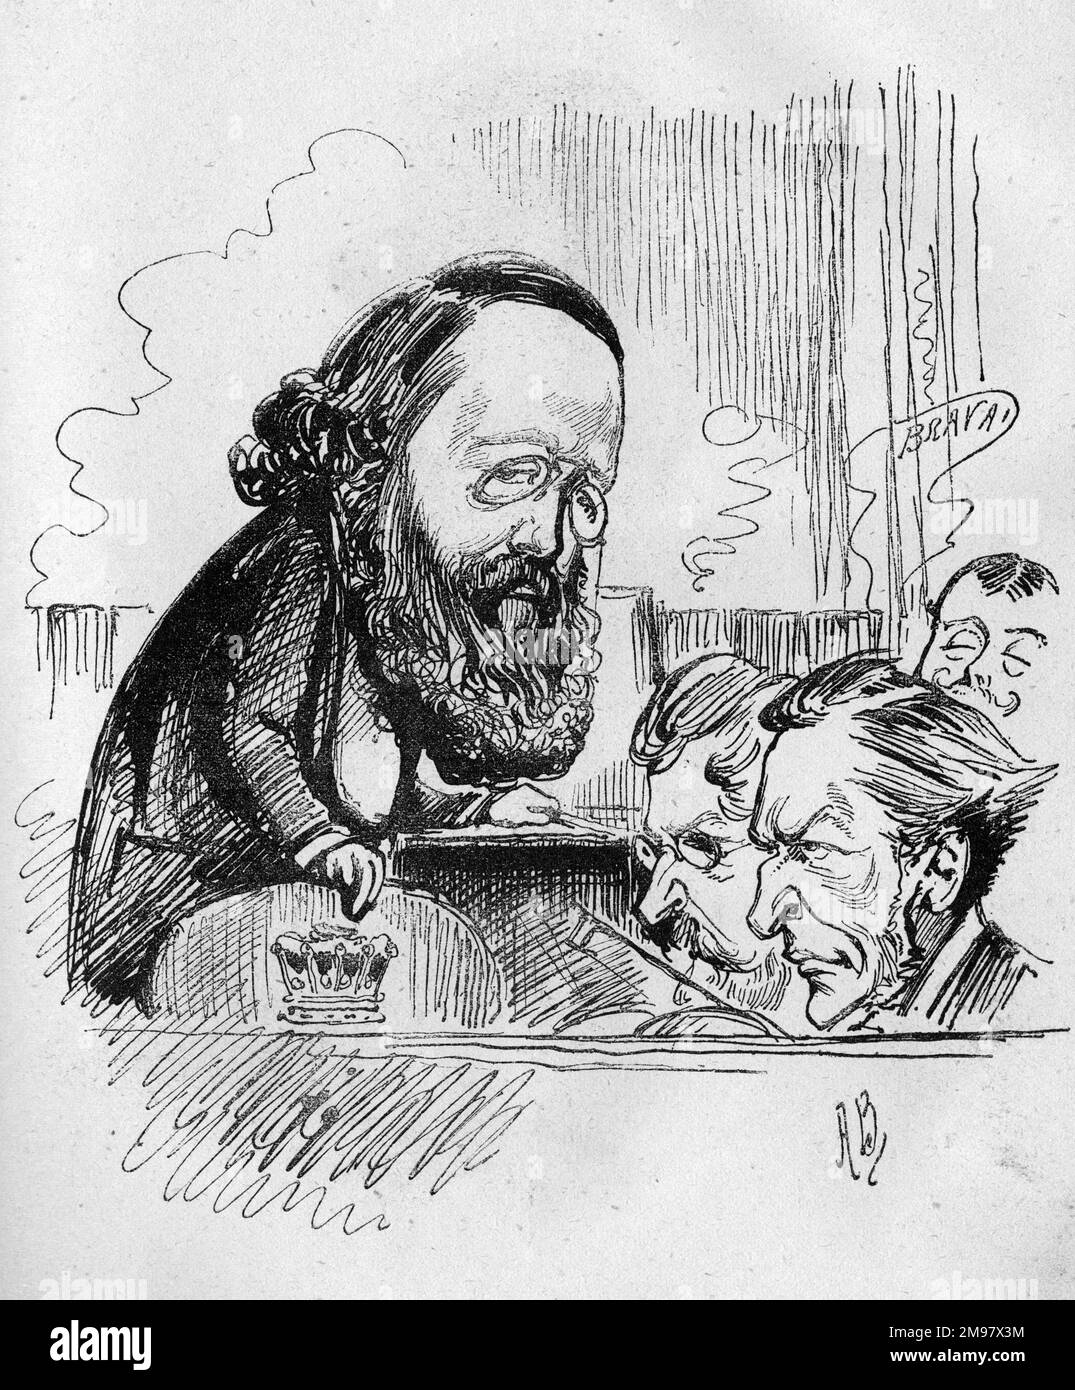 Karikatur von Lord Salisbury (Robert Arthur Talbot Gascoyne-Cecil, 3. Marquess von Salisbury, 1830-1903), dem neu ernannten konservativen Parteiführer und Oppositionsführer nach dem Tod von Disraeli. Hier wird er als Orchesterdirigent mit Musikern in einer Theatergrube dargestellt. Stockfoto